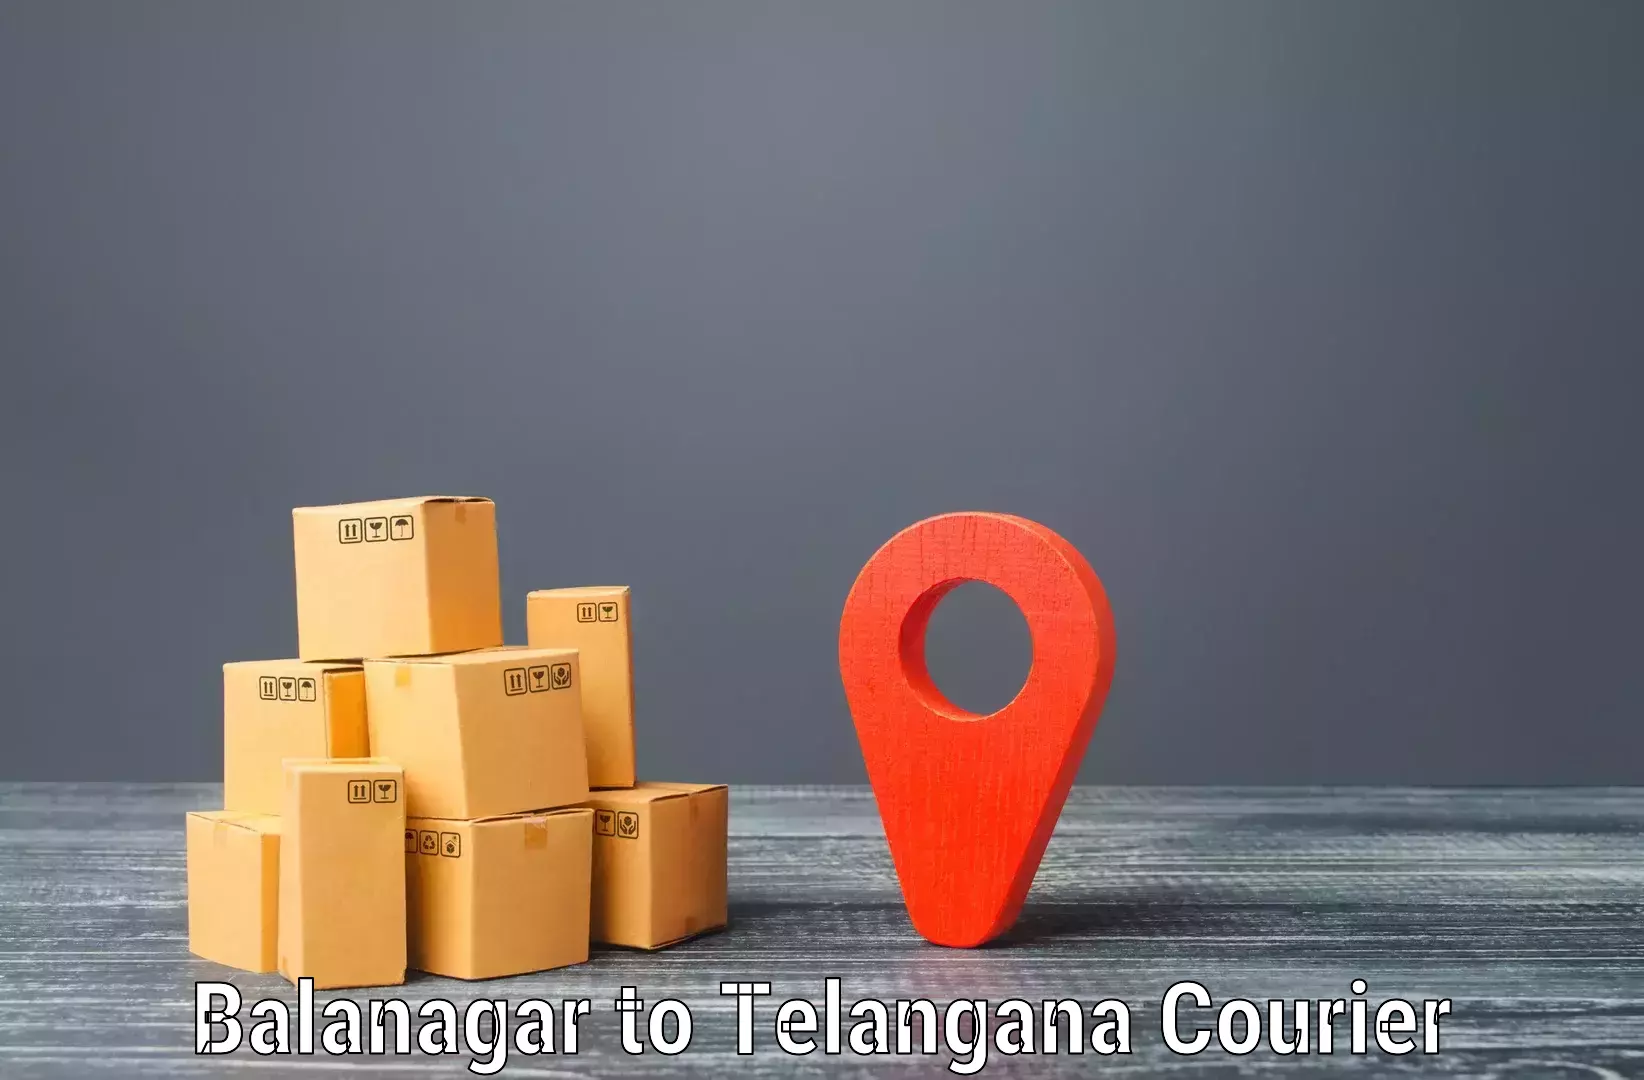 Speedy delivery service in Balanagar to Achampet